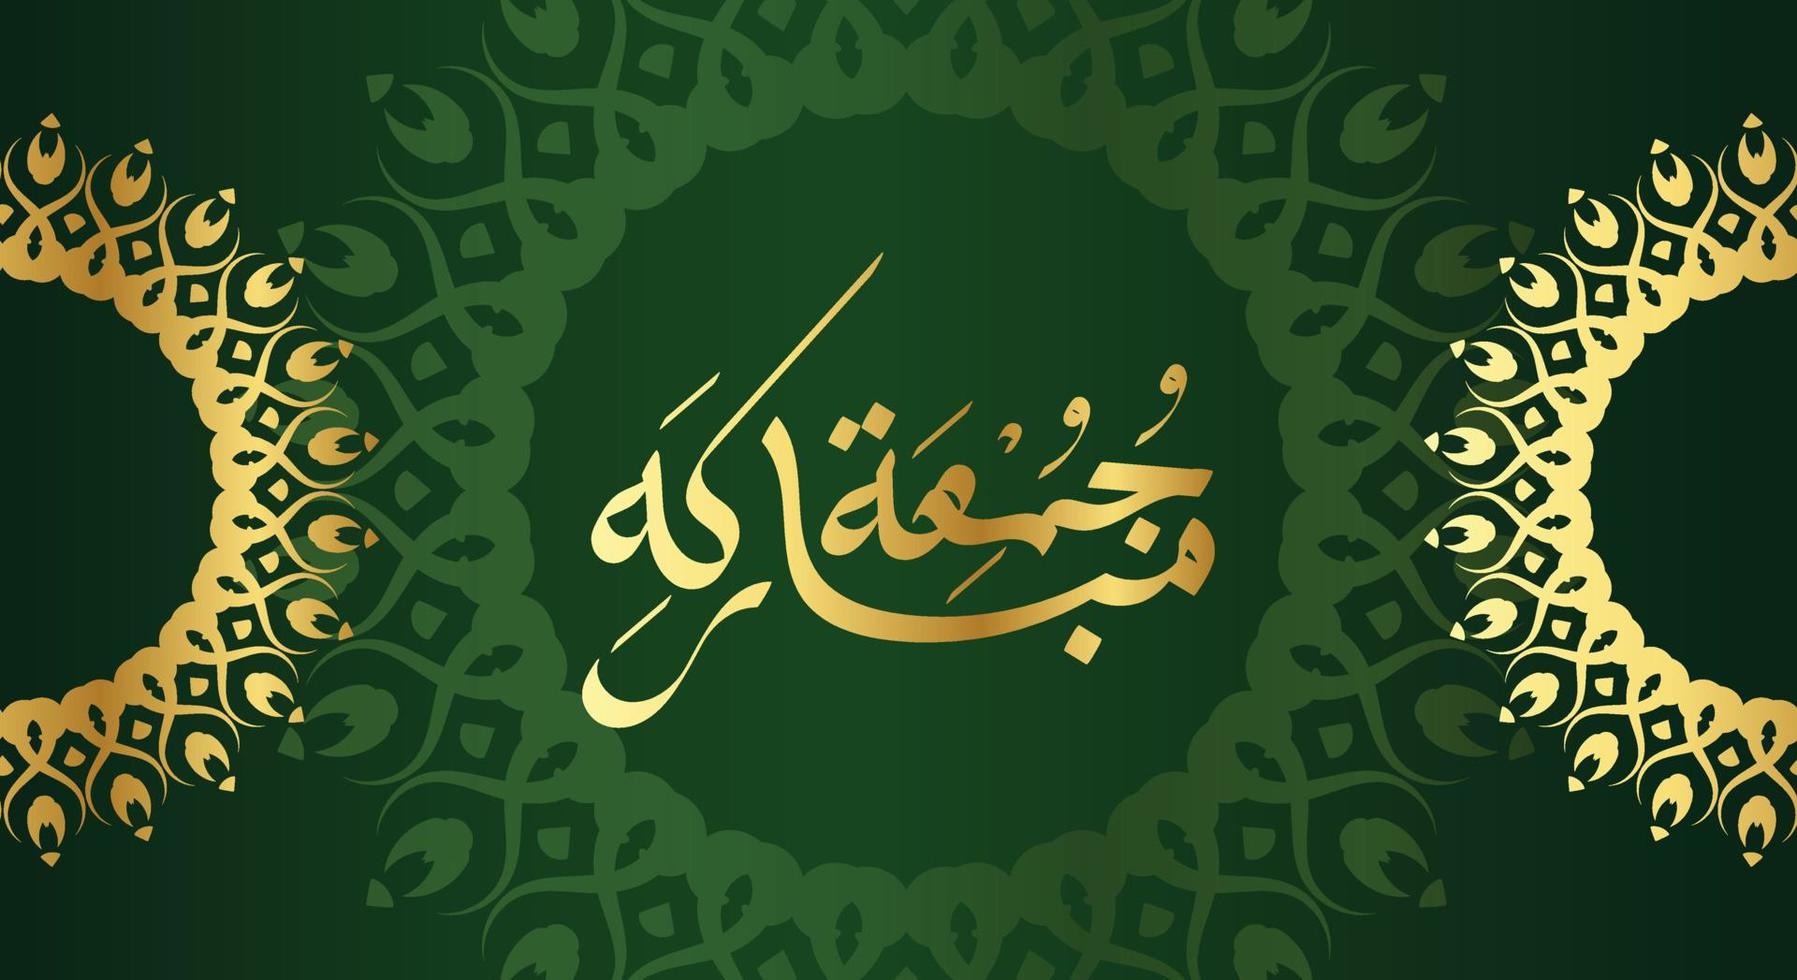 kostenloses jumaa mubarak arabisches Kalligrafie-Design. Vintage-Logo-Typ für den Karfreitag. grußkarte zum wochenende in der muslimischen welt, übersetzt, möge es ein gesegneter freitag sein vektor